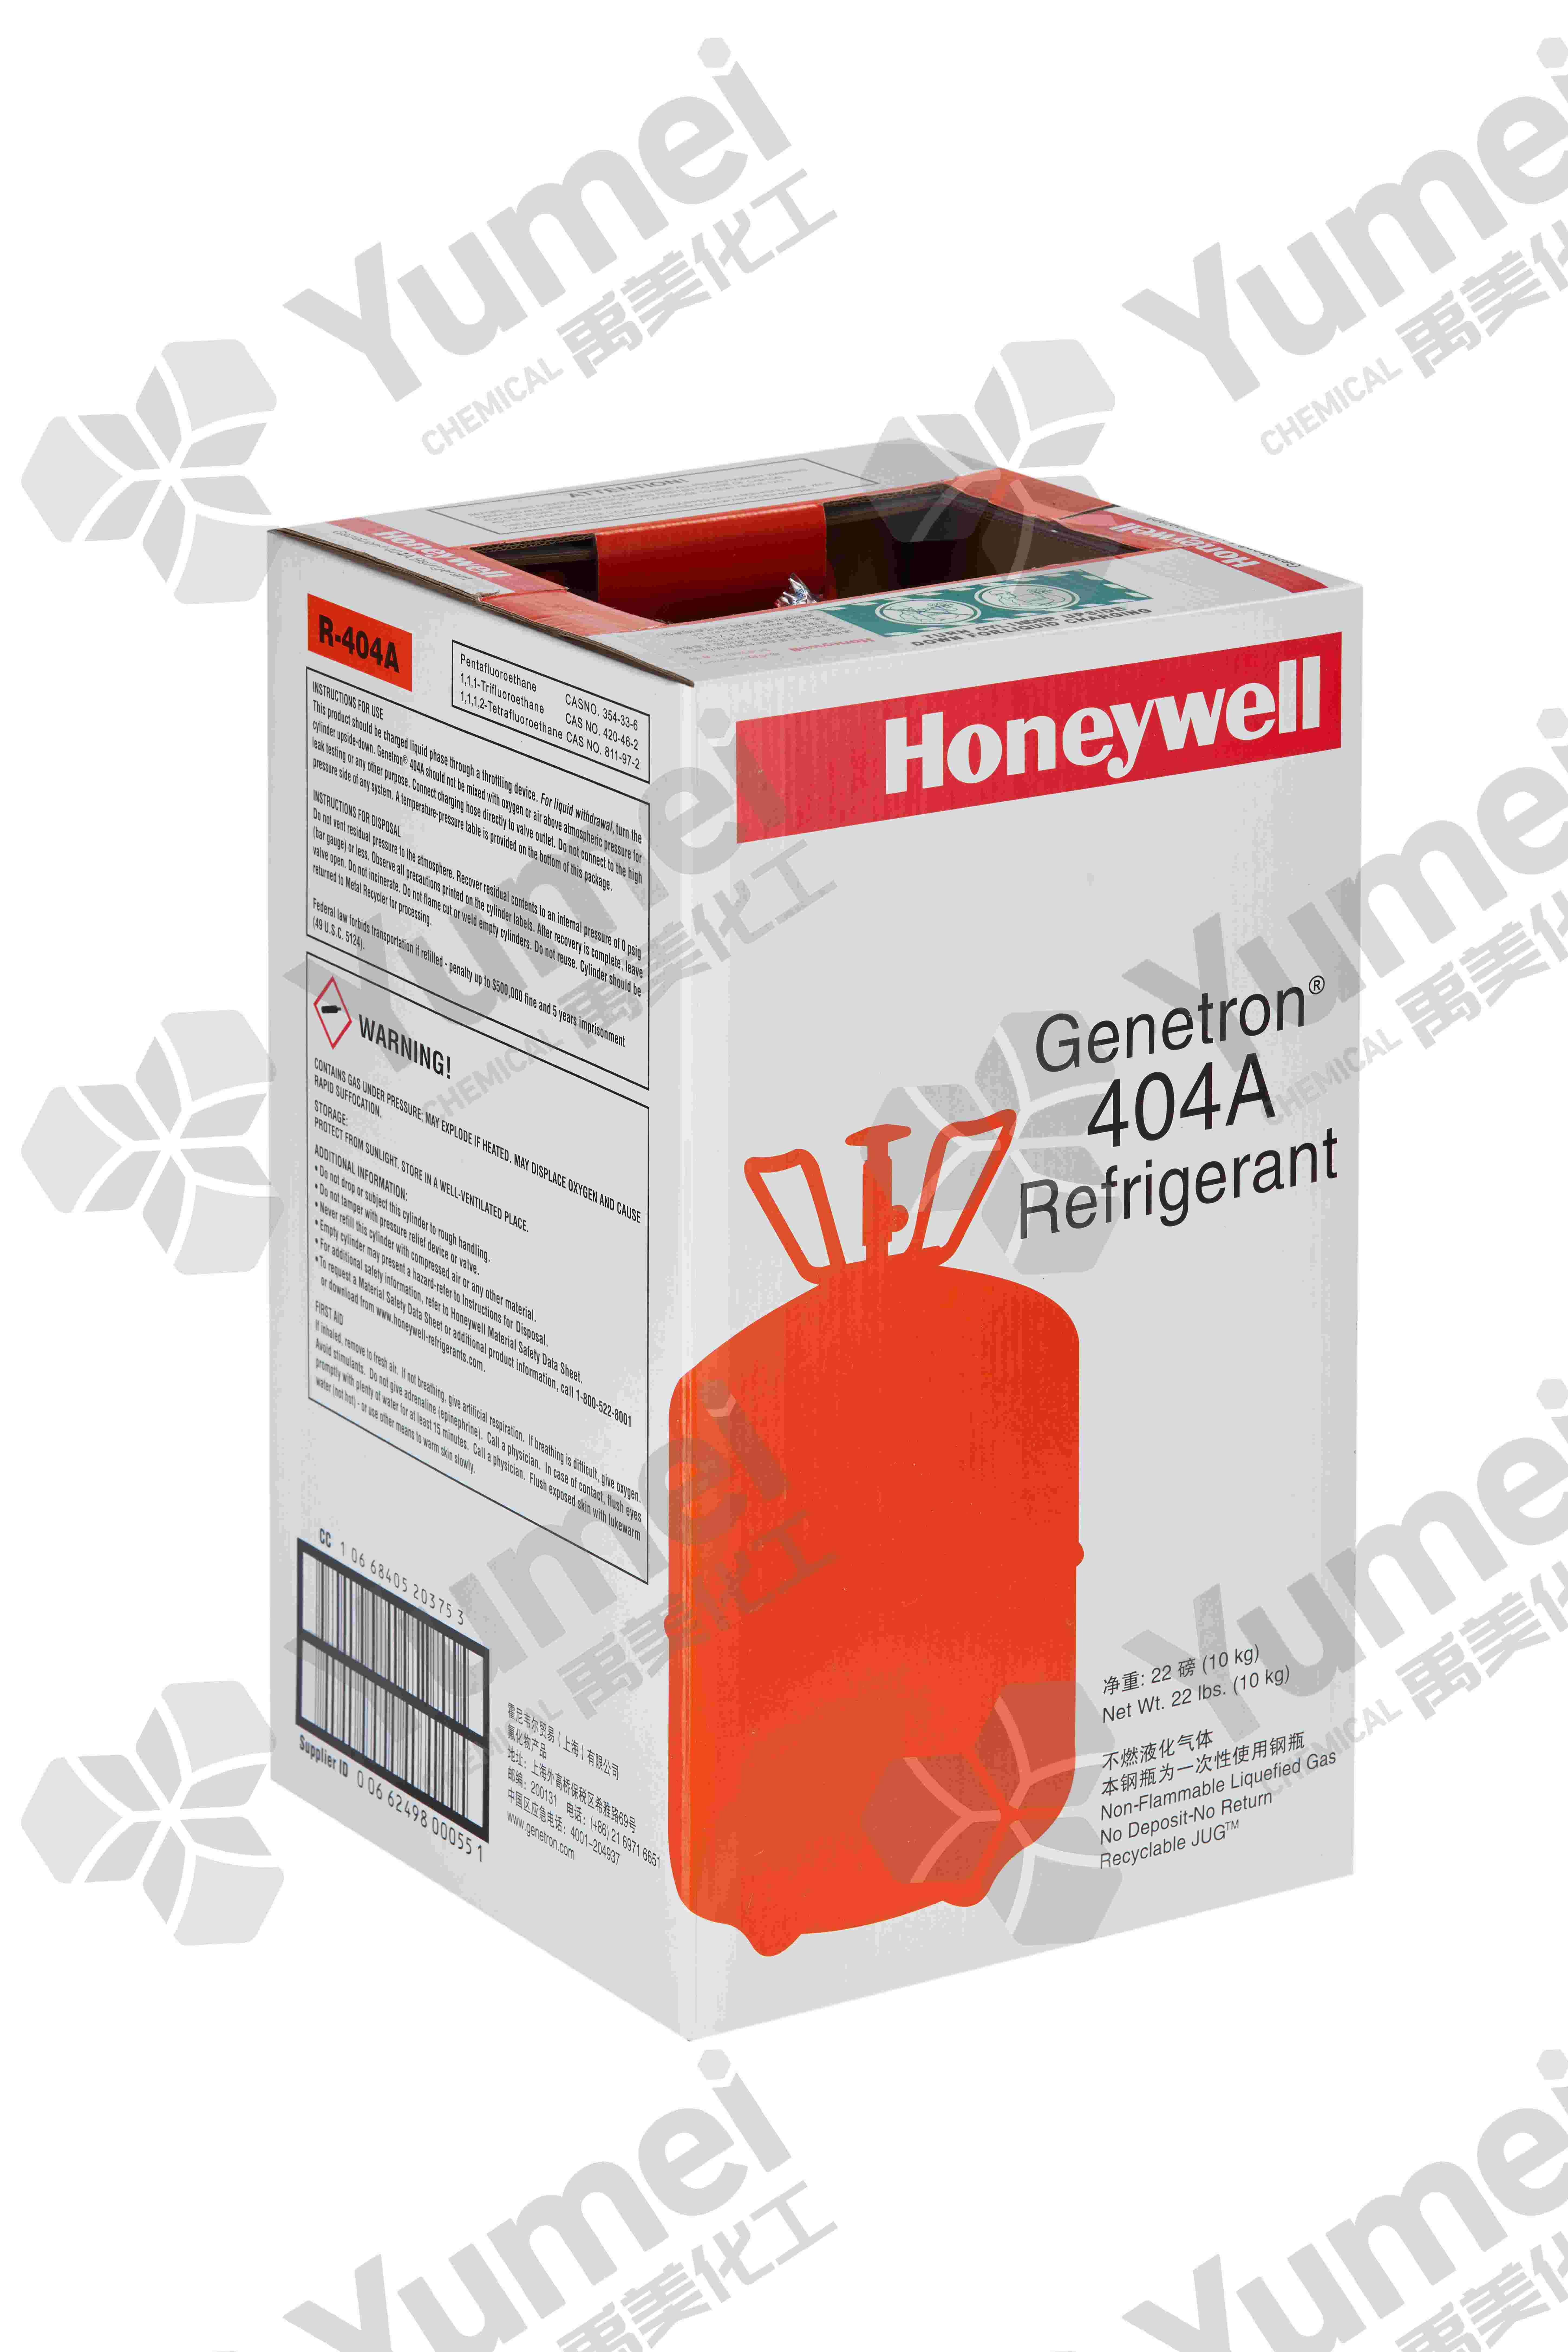 霍尼韦尔Honeywell极冷致R404a制冷剂环保冷媒雪种销售